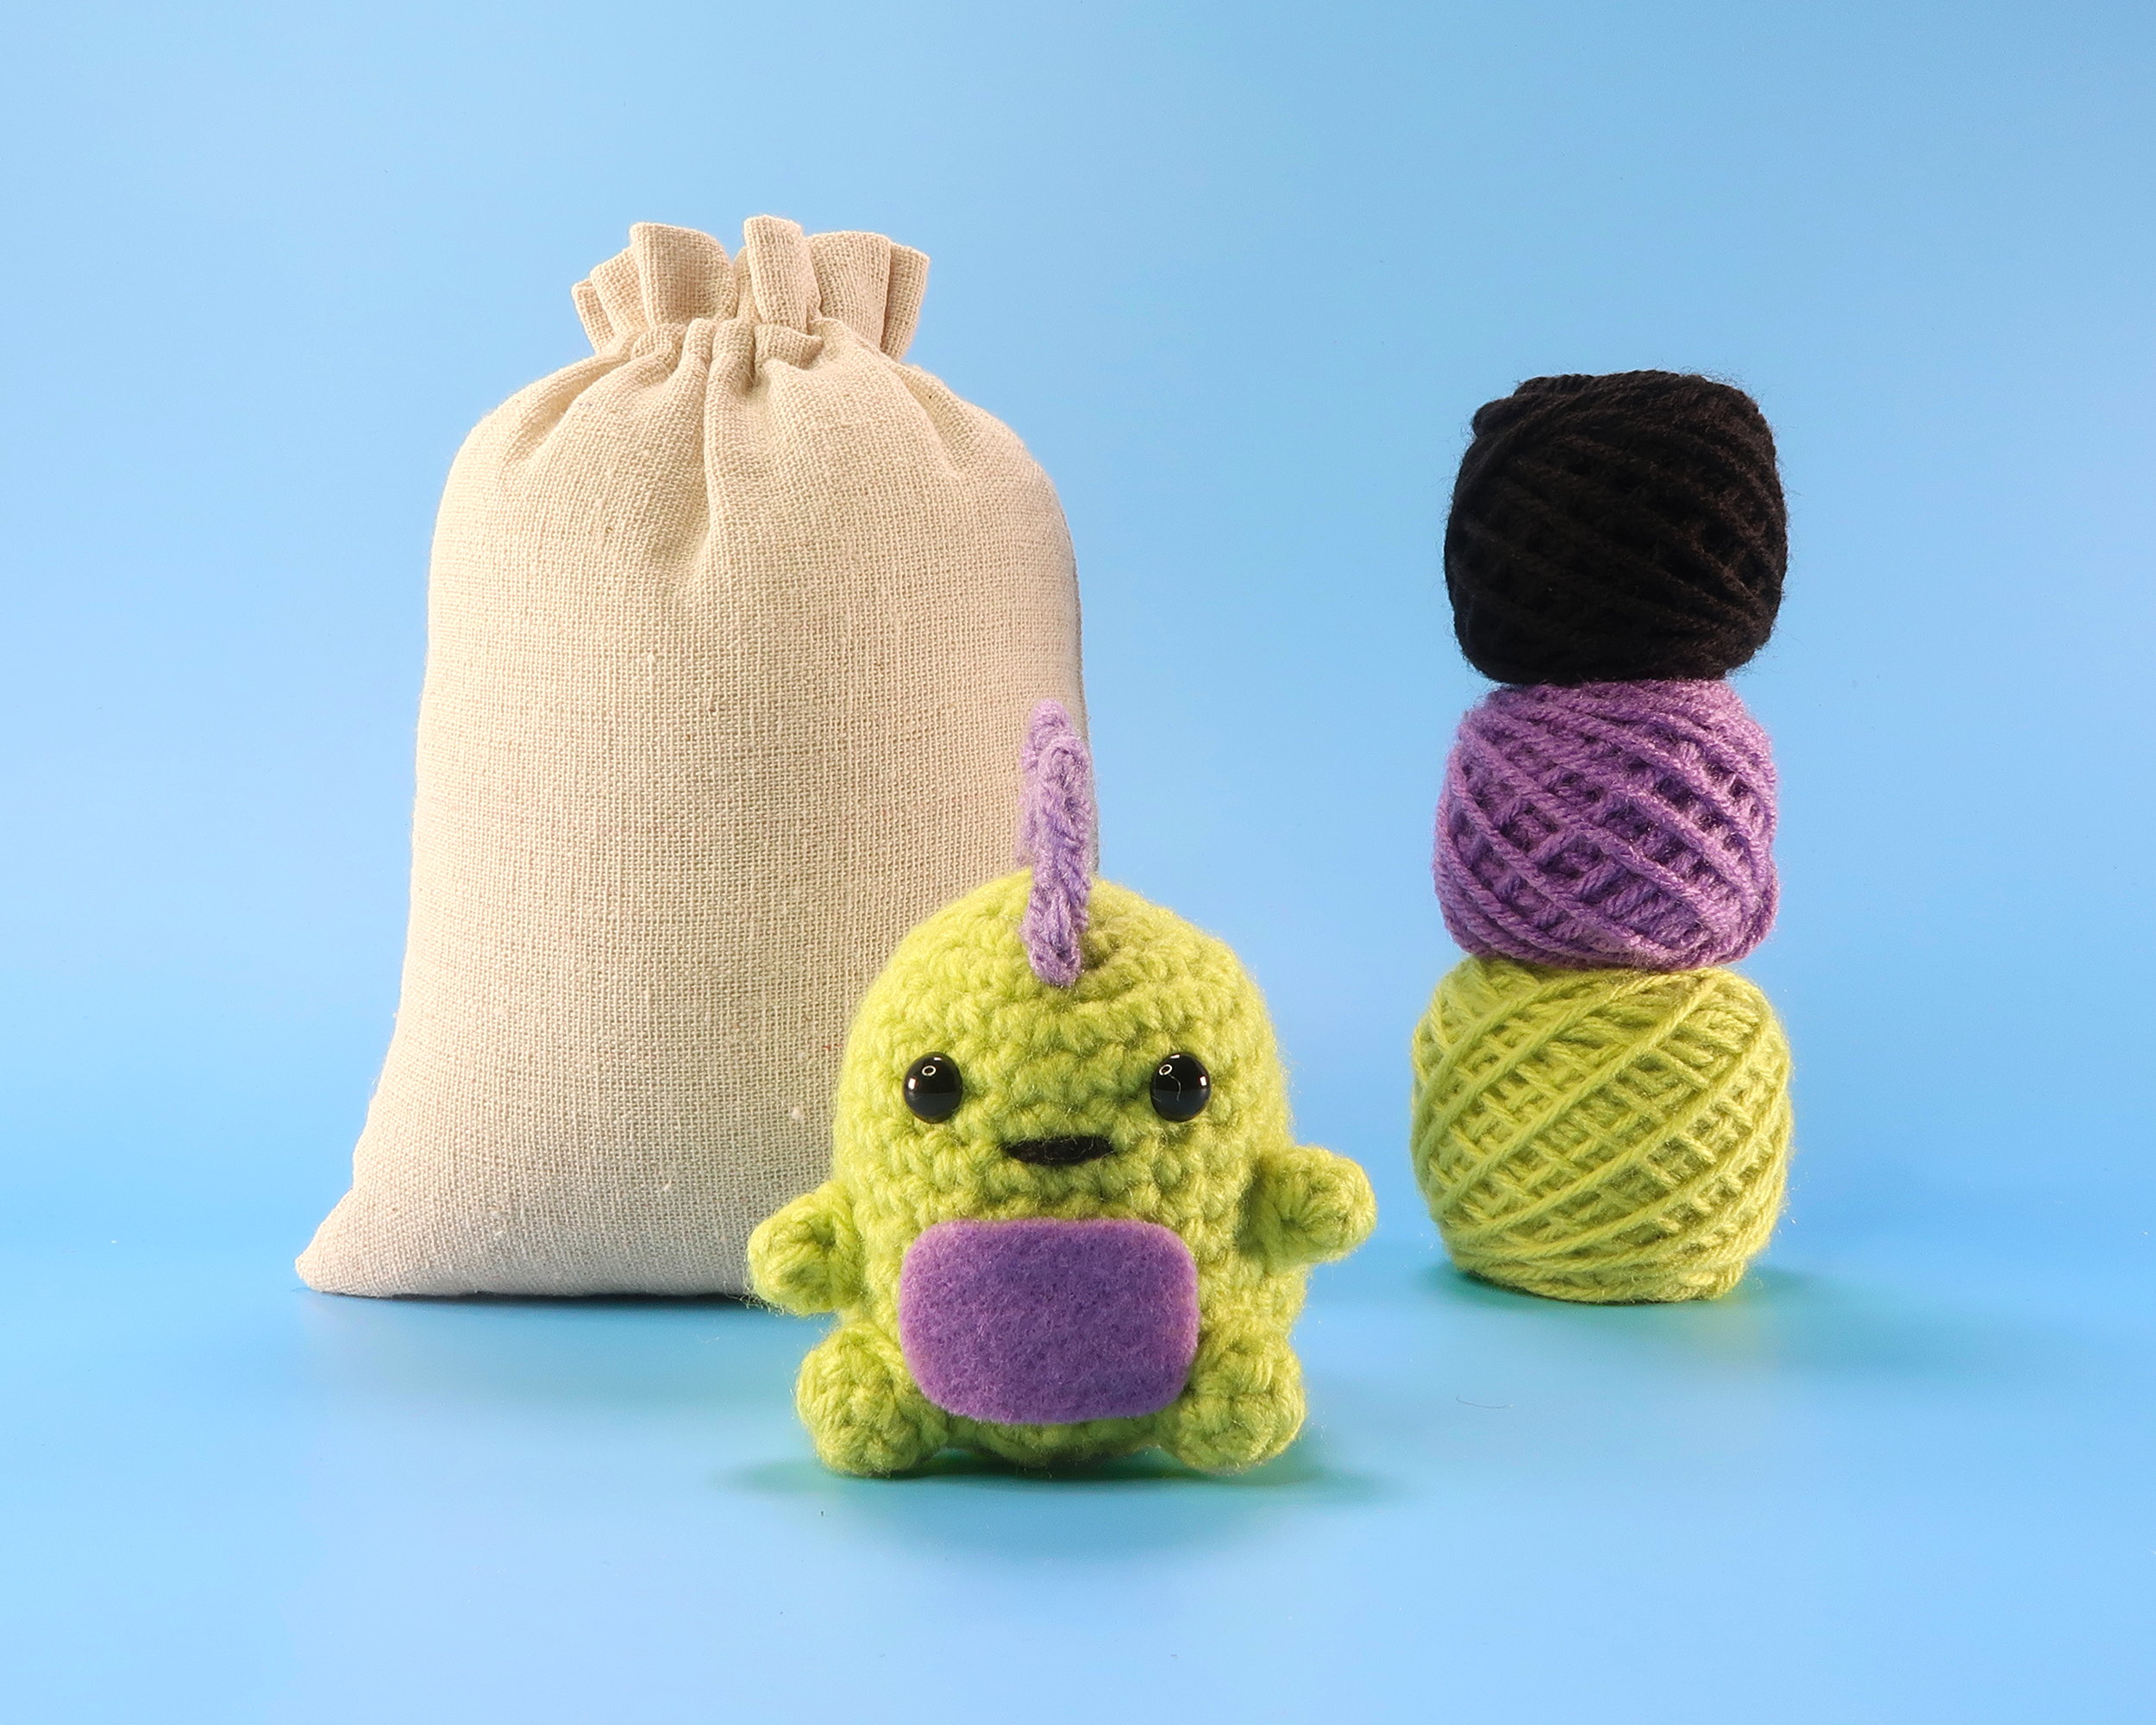 Daover Crochet Kit for Beginners - Set of 2 Dinosaur Crochet Kit for  Adults, Beginner Crochet Starter Kit DIY All-in-One Stuffed Animal Knitting  Sets